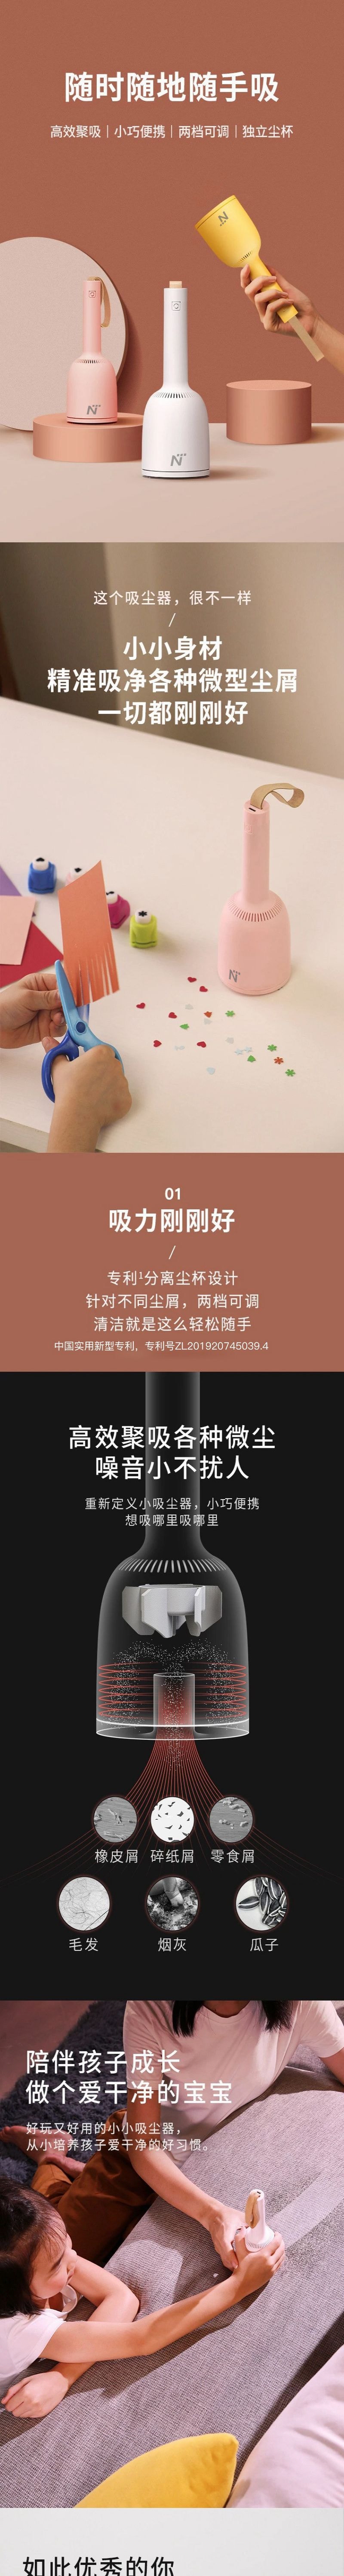 【香港DHL 5-7日达】网易智造 mini桌面吸尘器 告别桌面沙发尘屑毛发 王子白